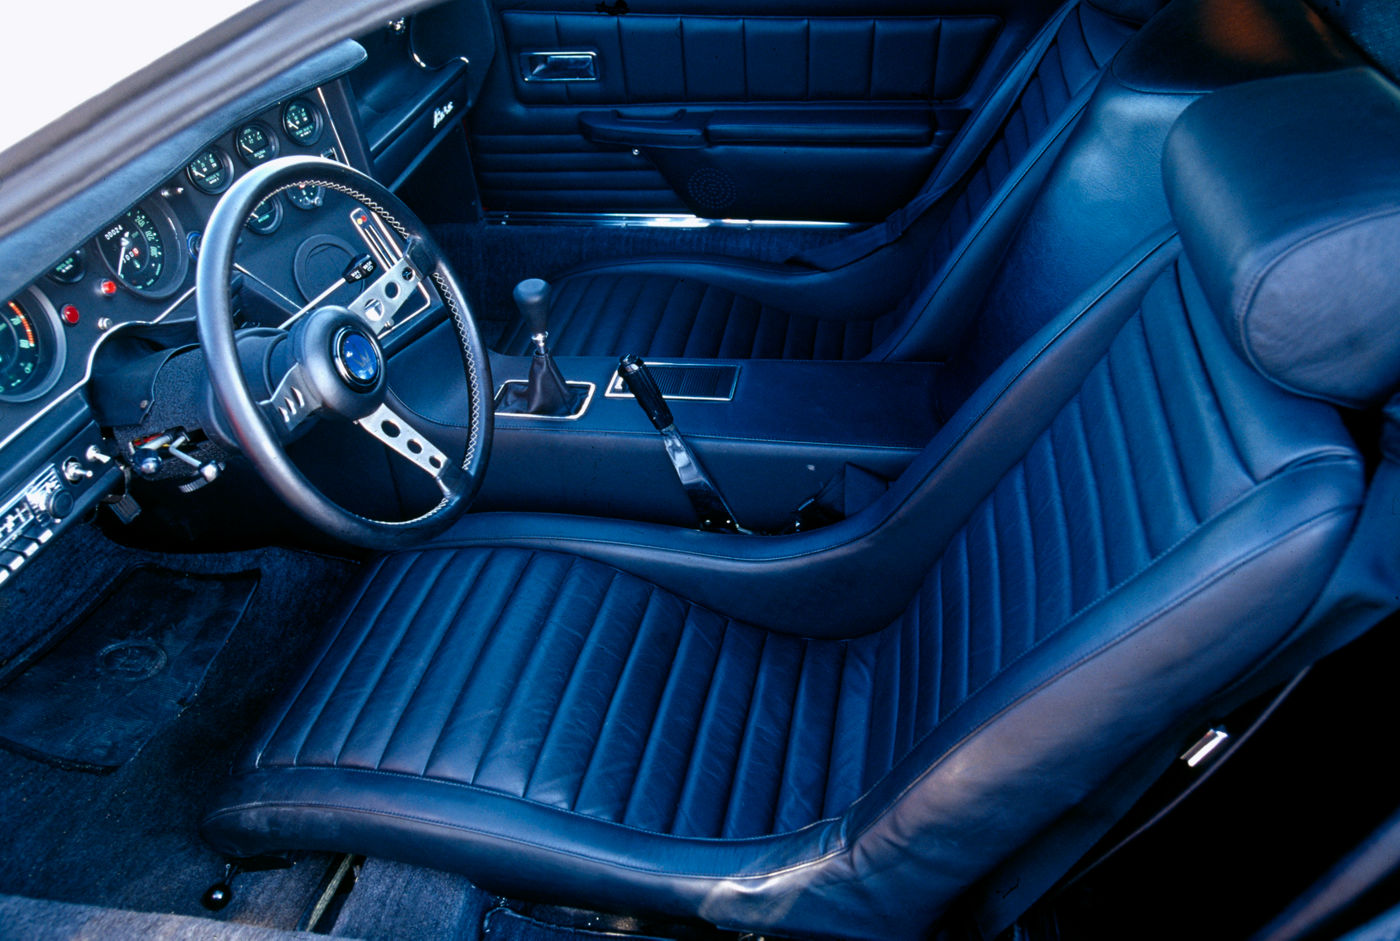 1971 Maserati Bora - classic sports car model, interior view